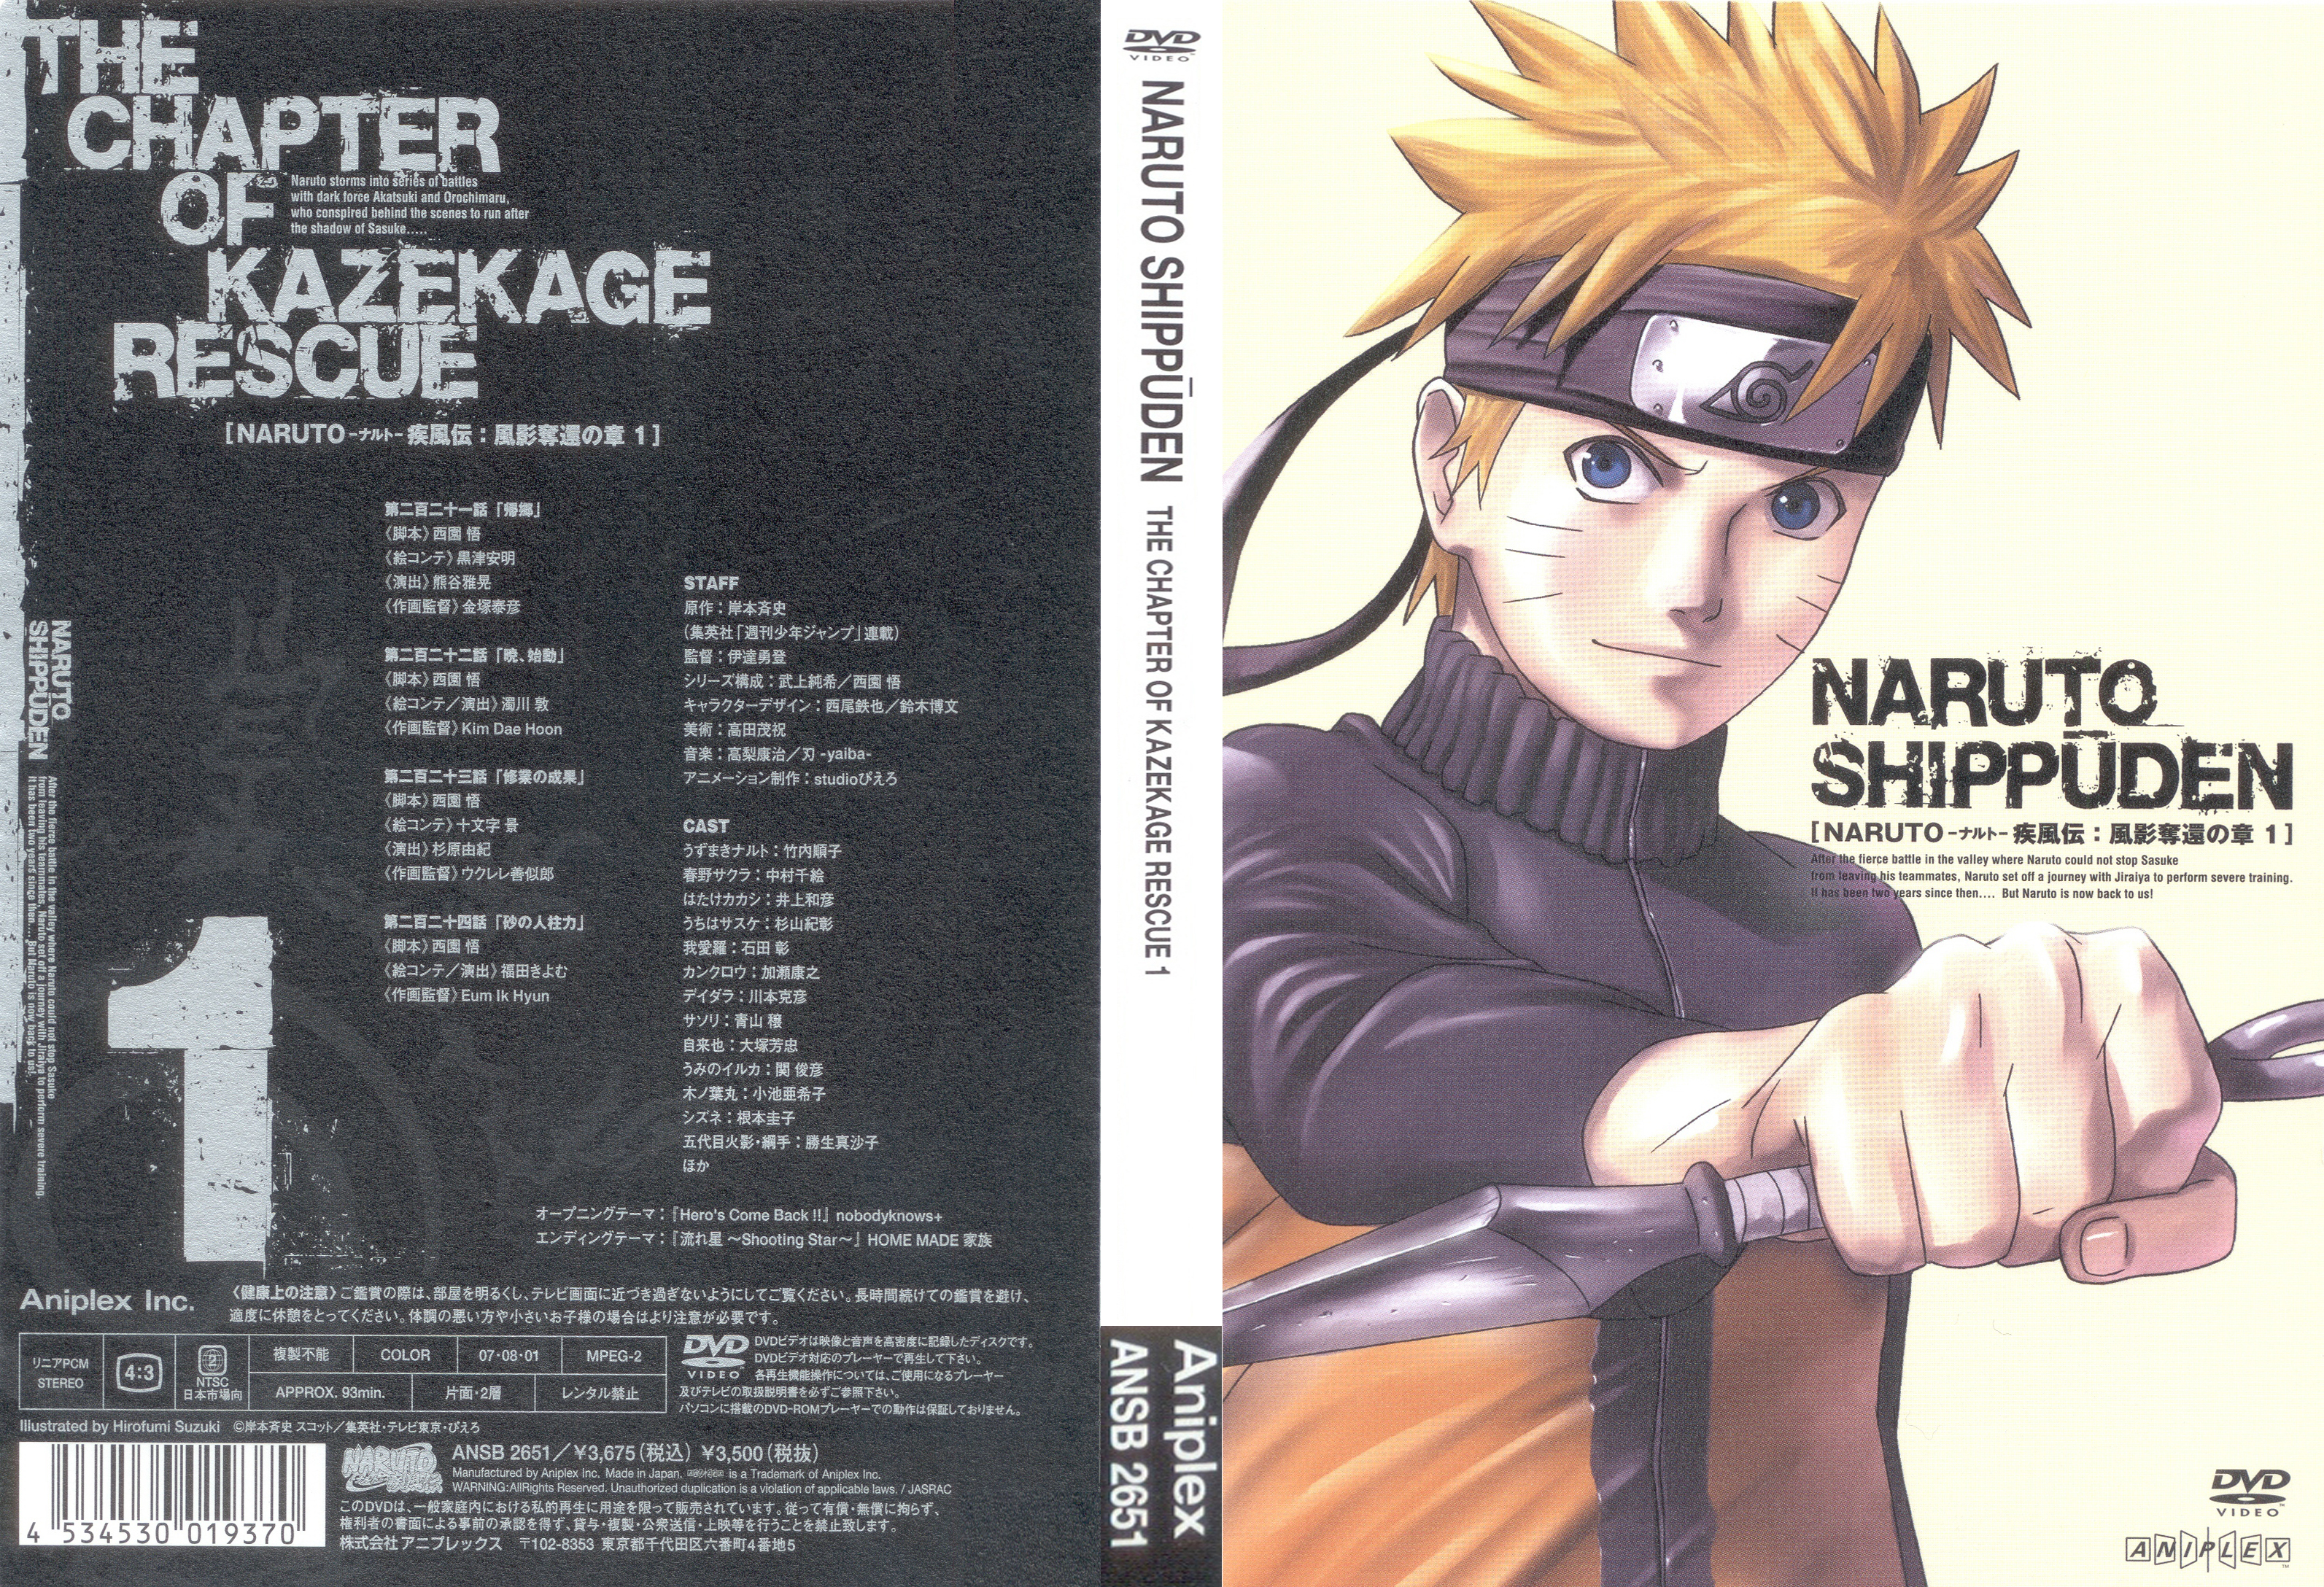 Suzuki Hirofumi Naruto Naruto Shippuden Uzumaki Naruto Male Screening Yande Re